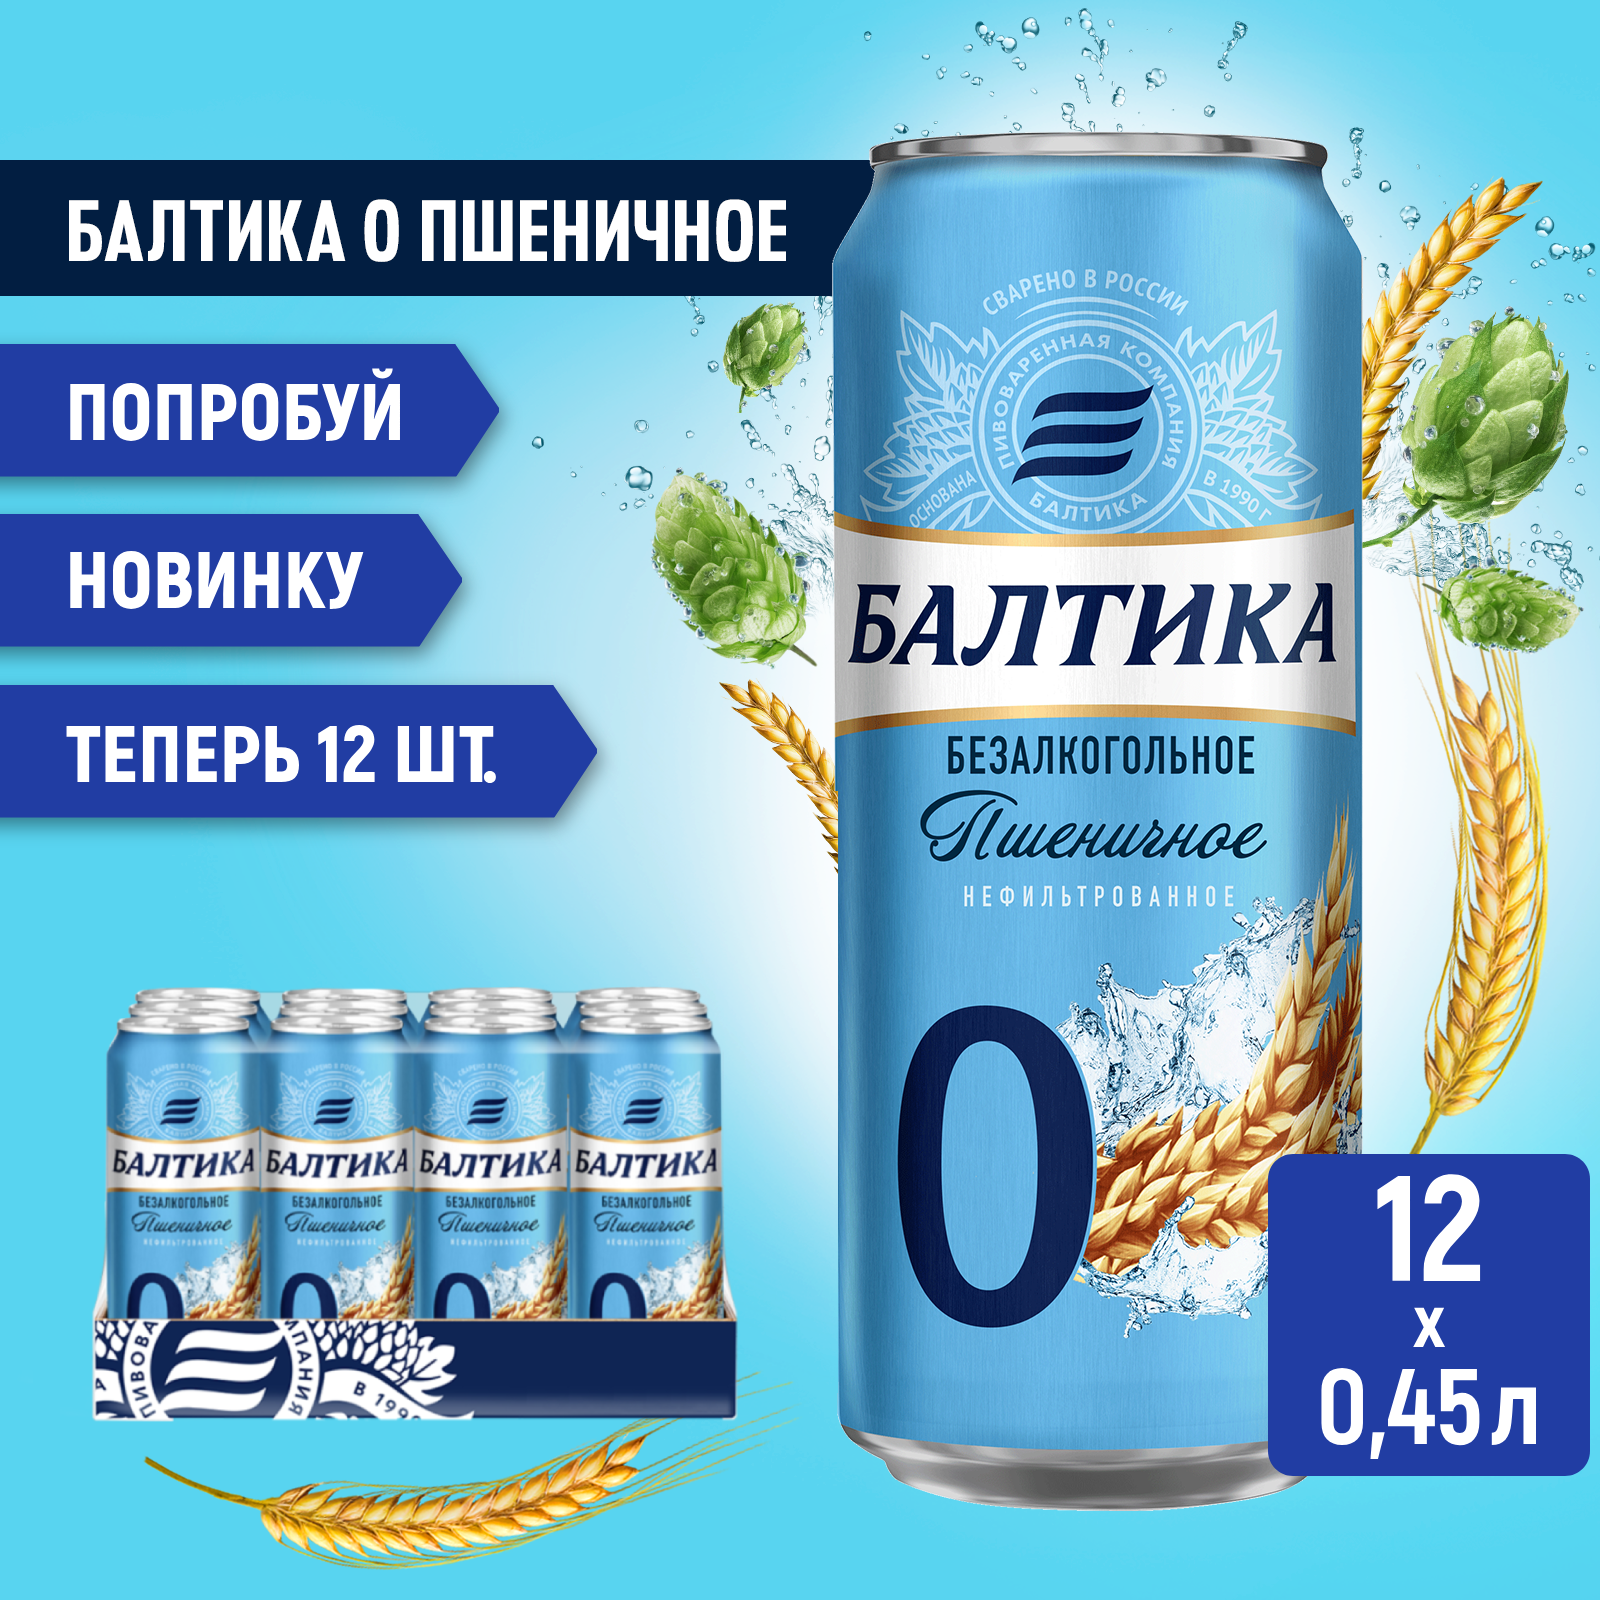 Пивной напиток Балтика №0 Пшеничное нефильтрованное безалкогольное, 12 шт. х 0,45 л, банка